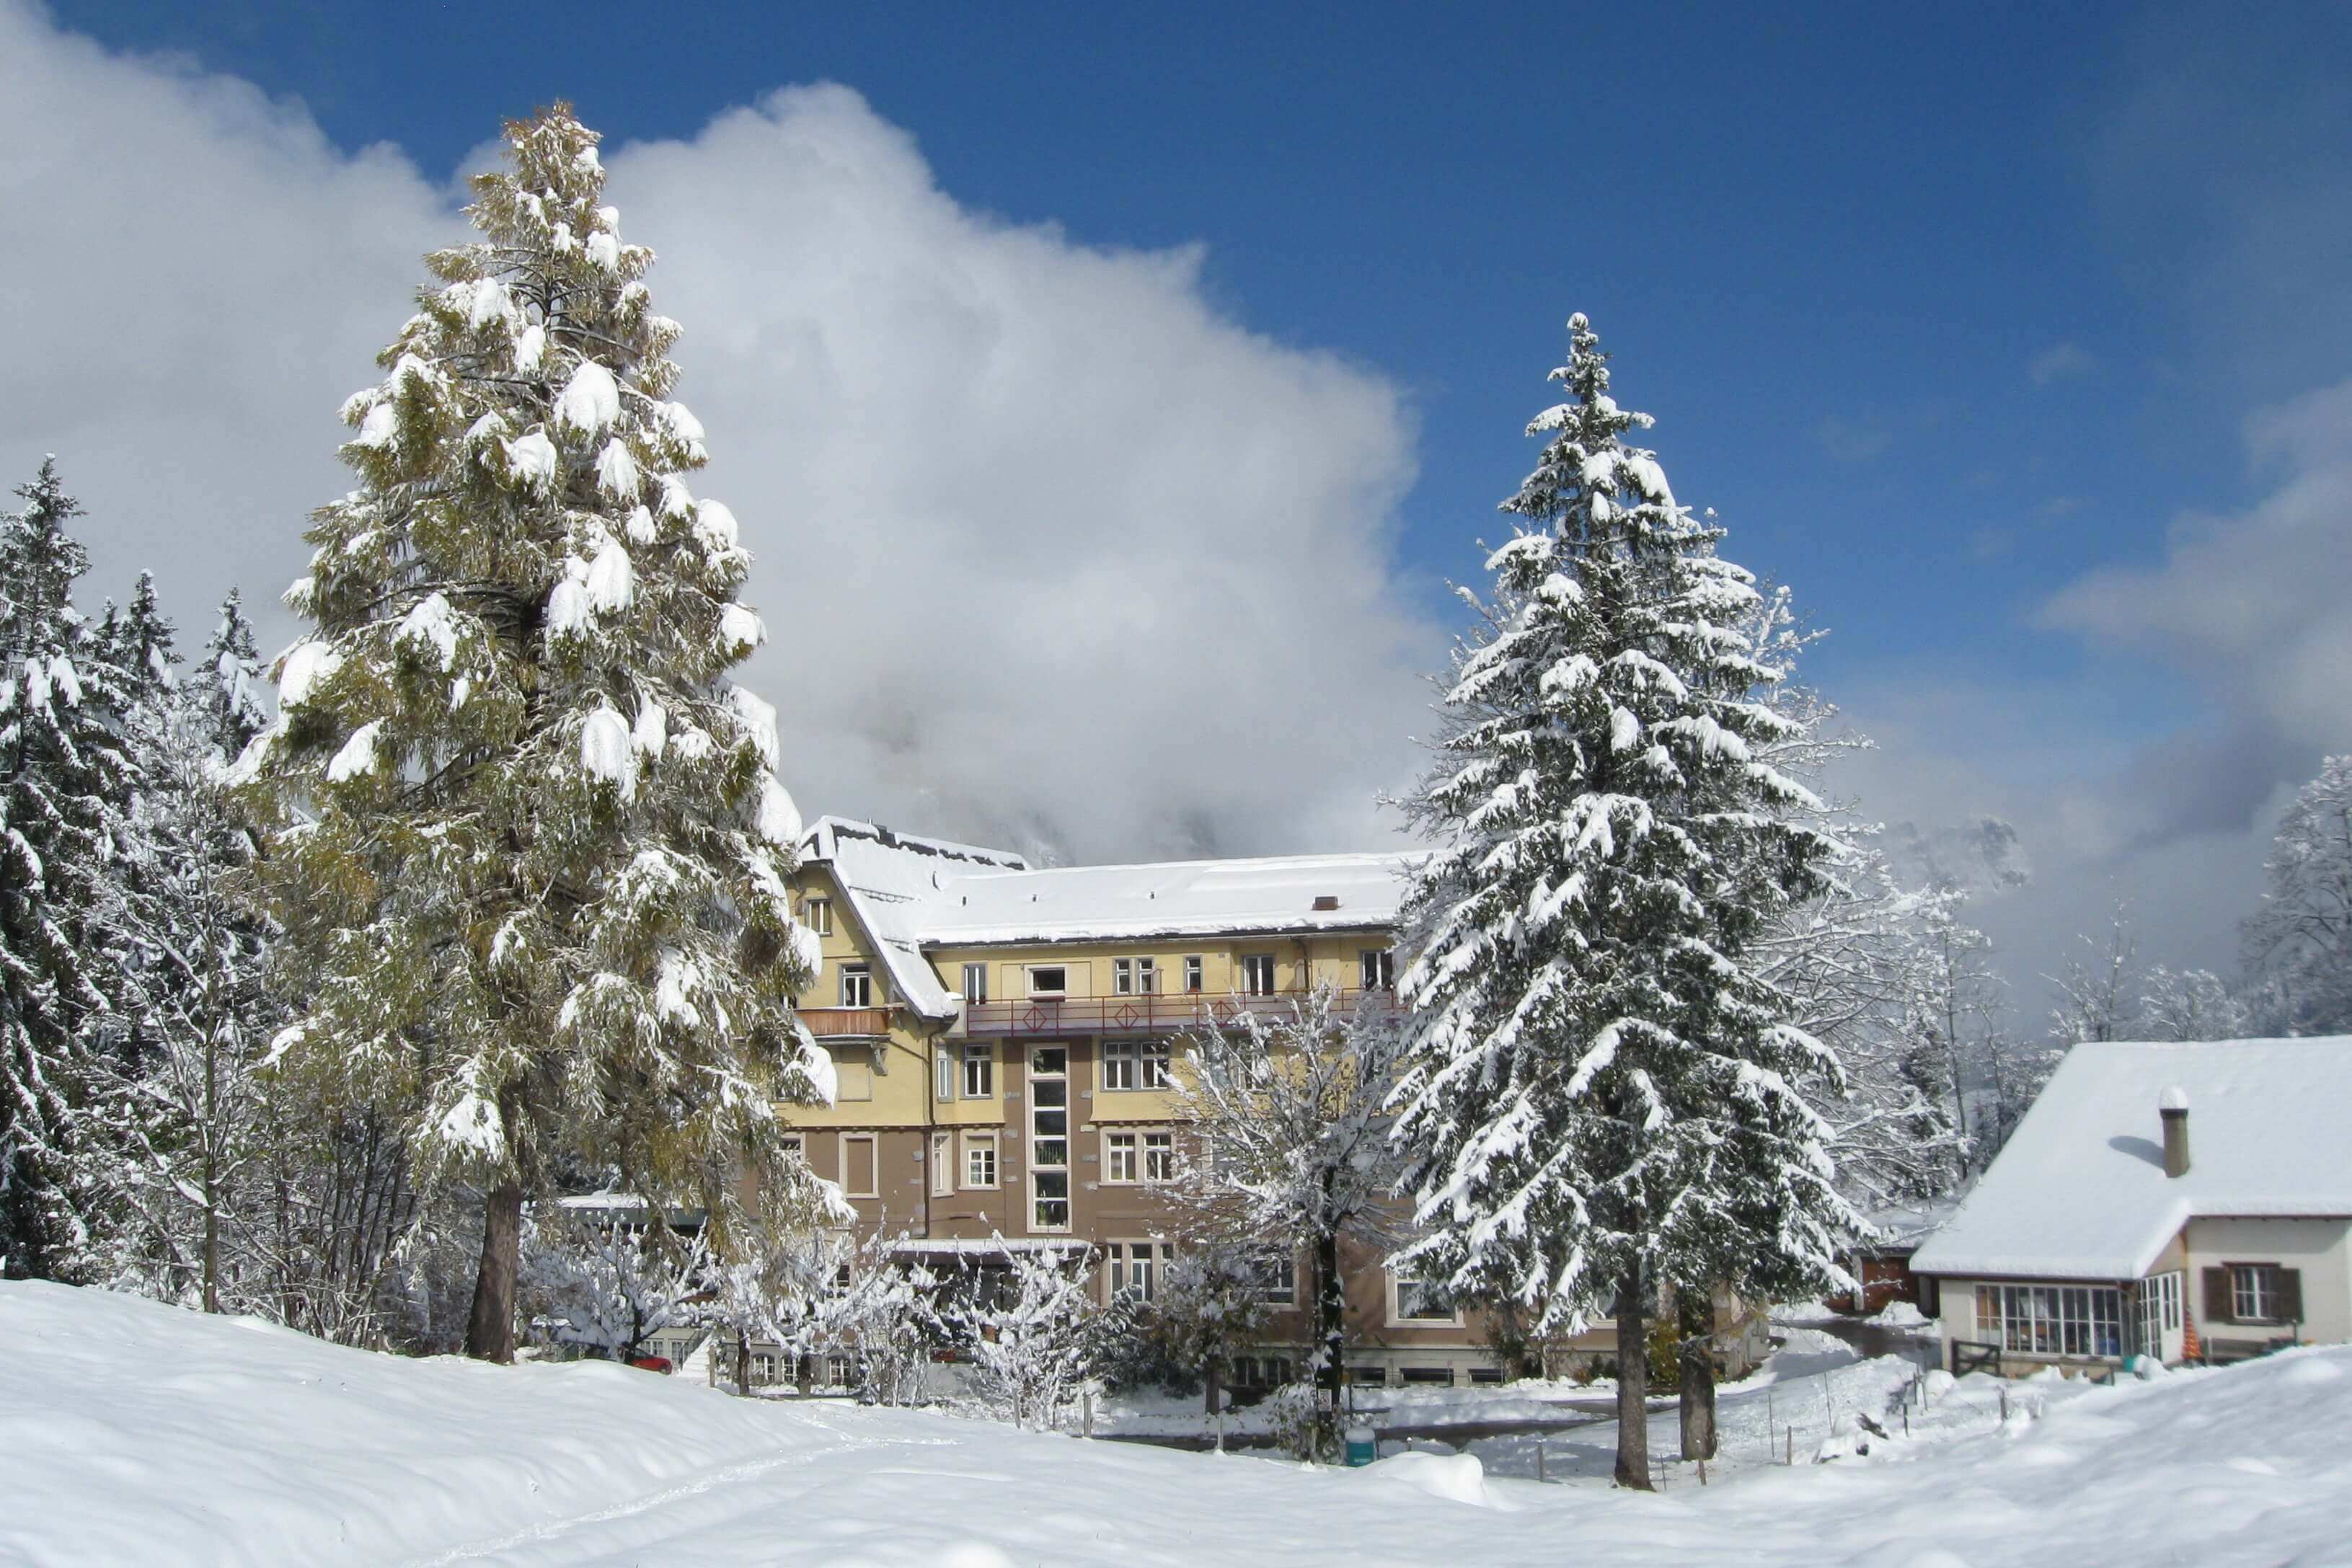 Hotel Kurhaus Grimmialp in winter